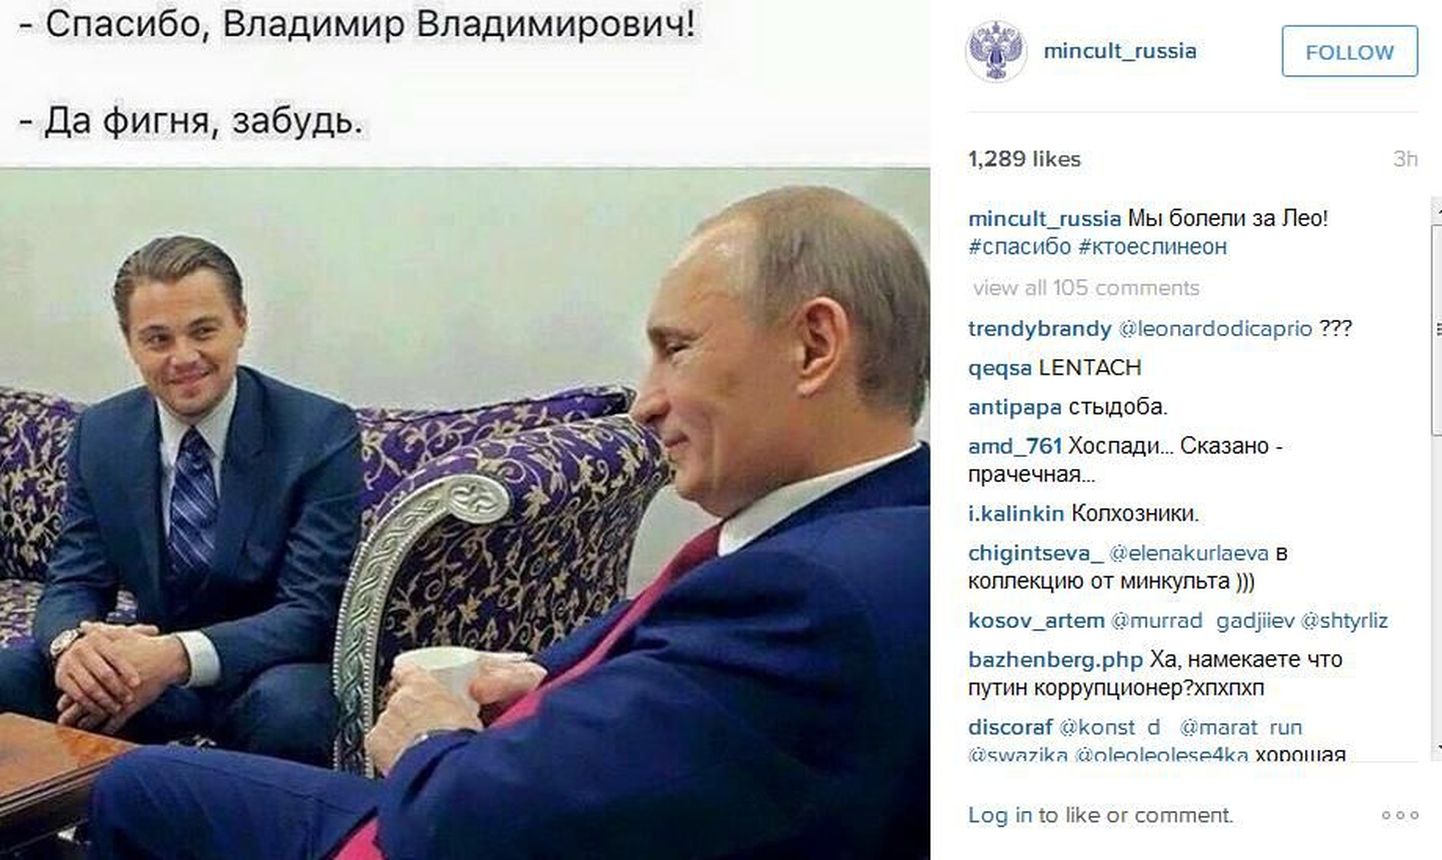 Путин и Ди Каприо. Шутка Минкульта России.